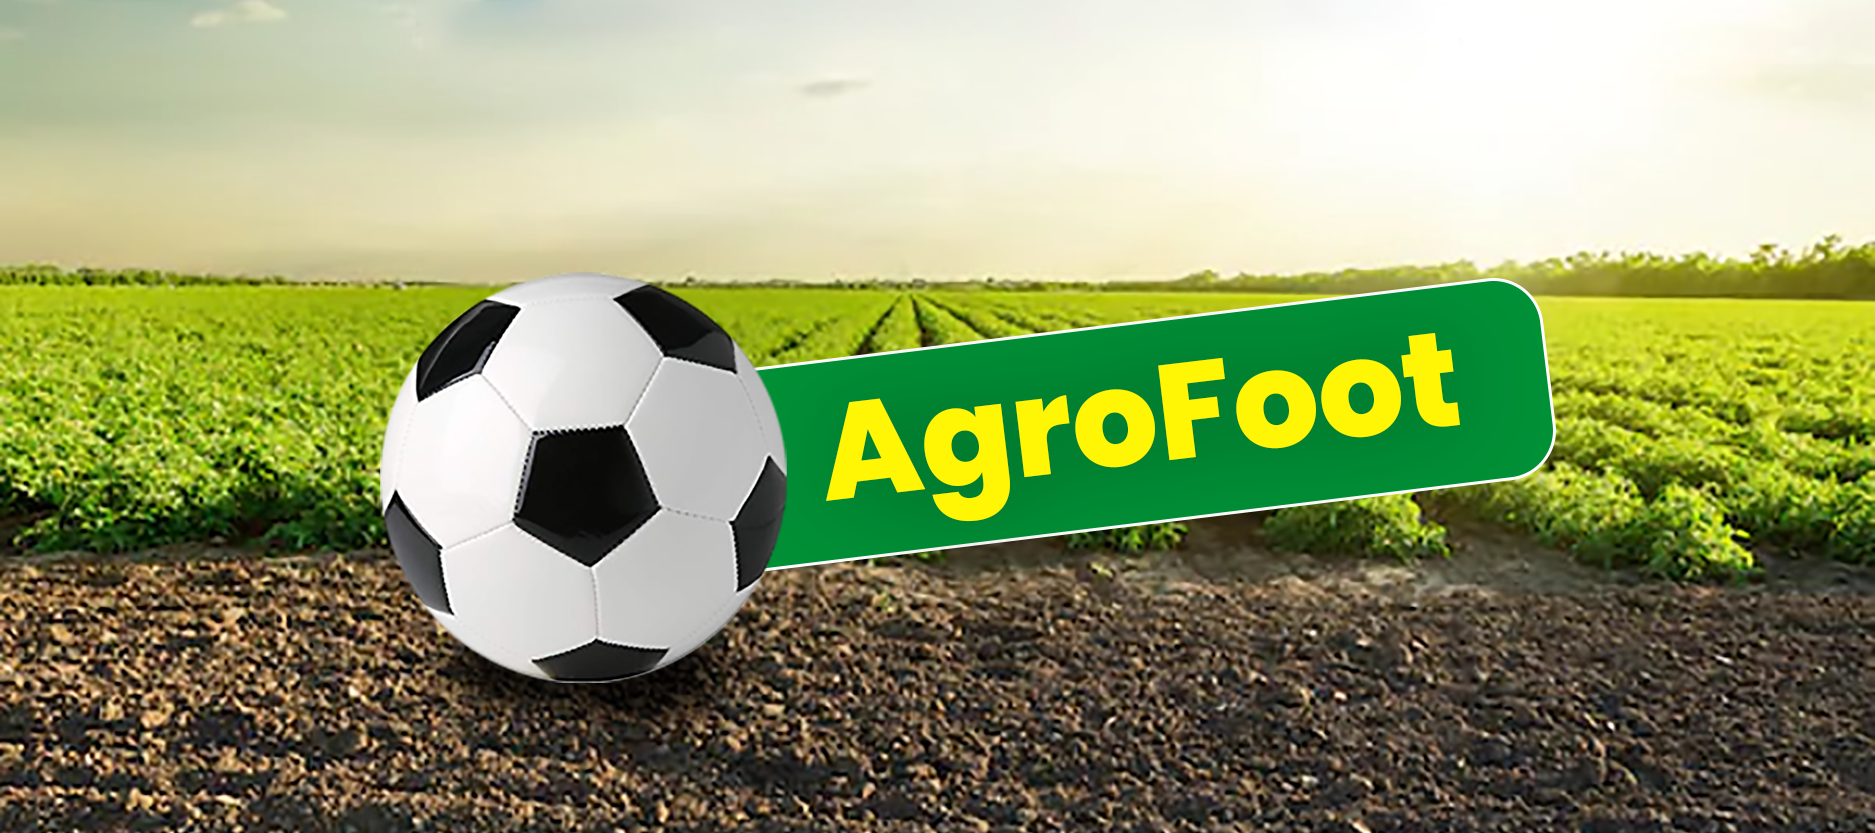 AGROFOOT : un concept innovant qui relie l’Agriculture au Football.